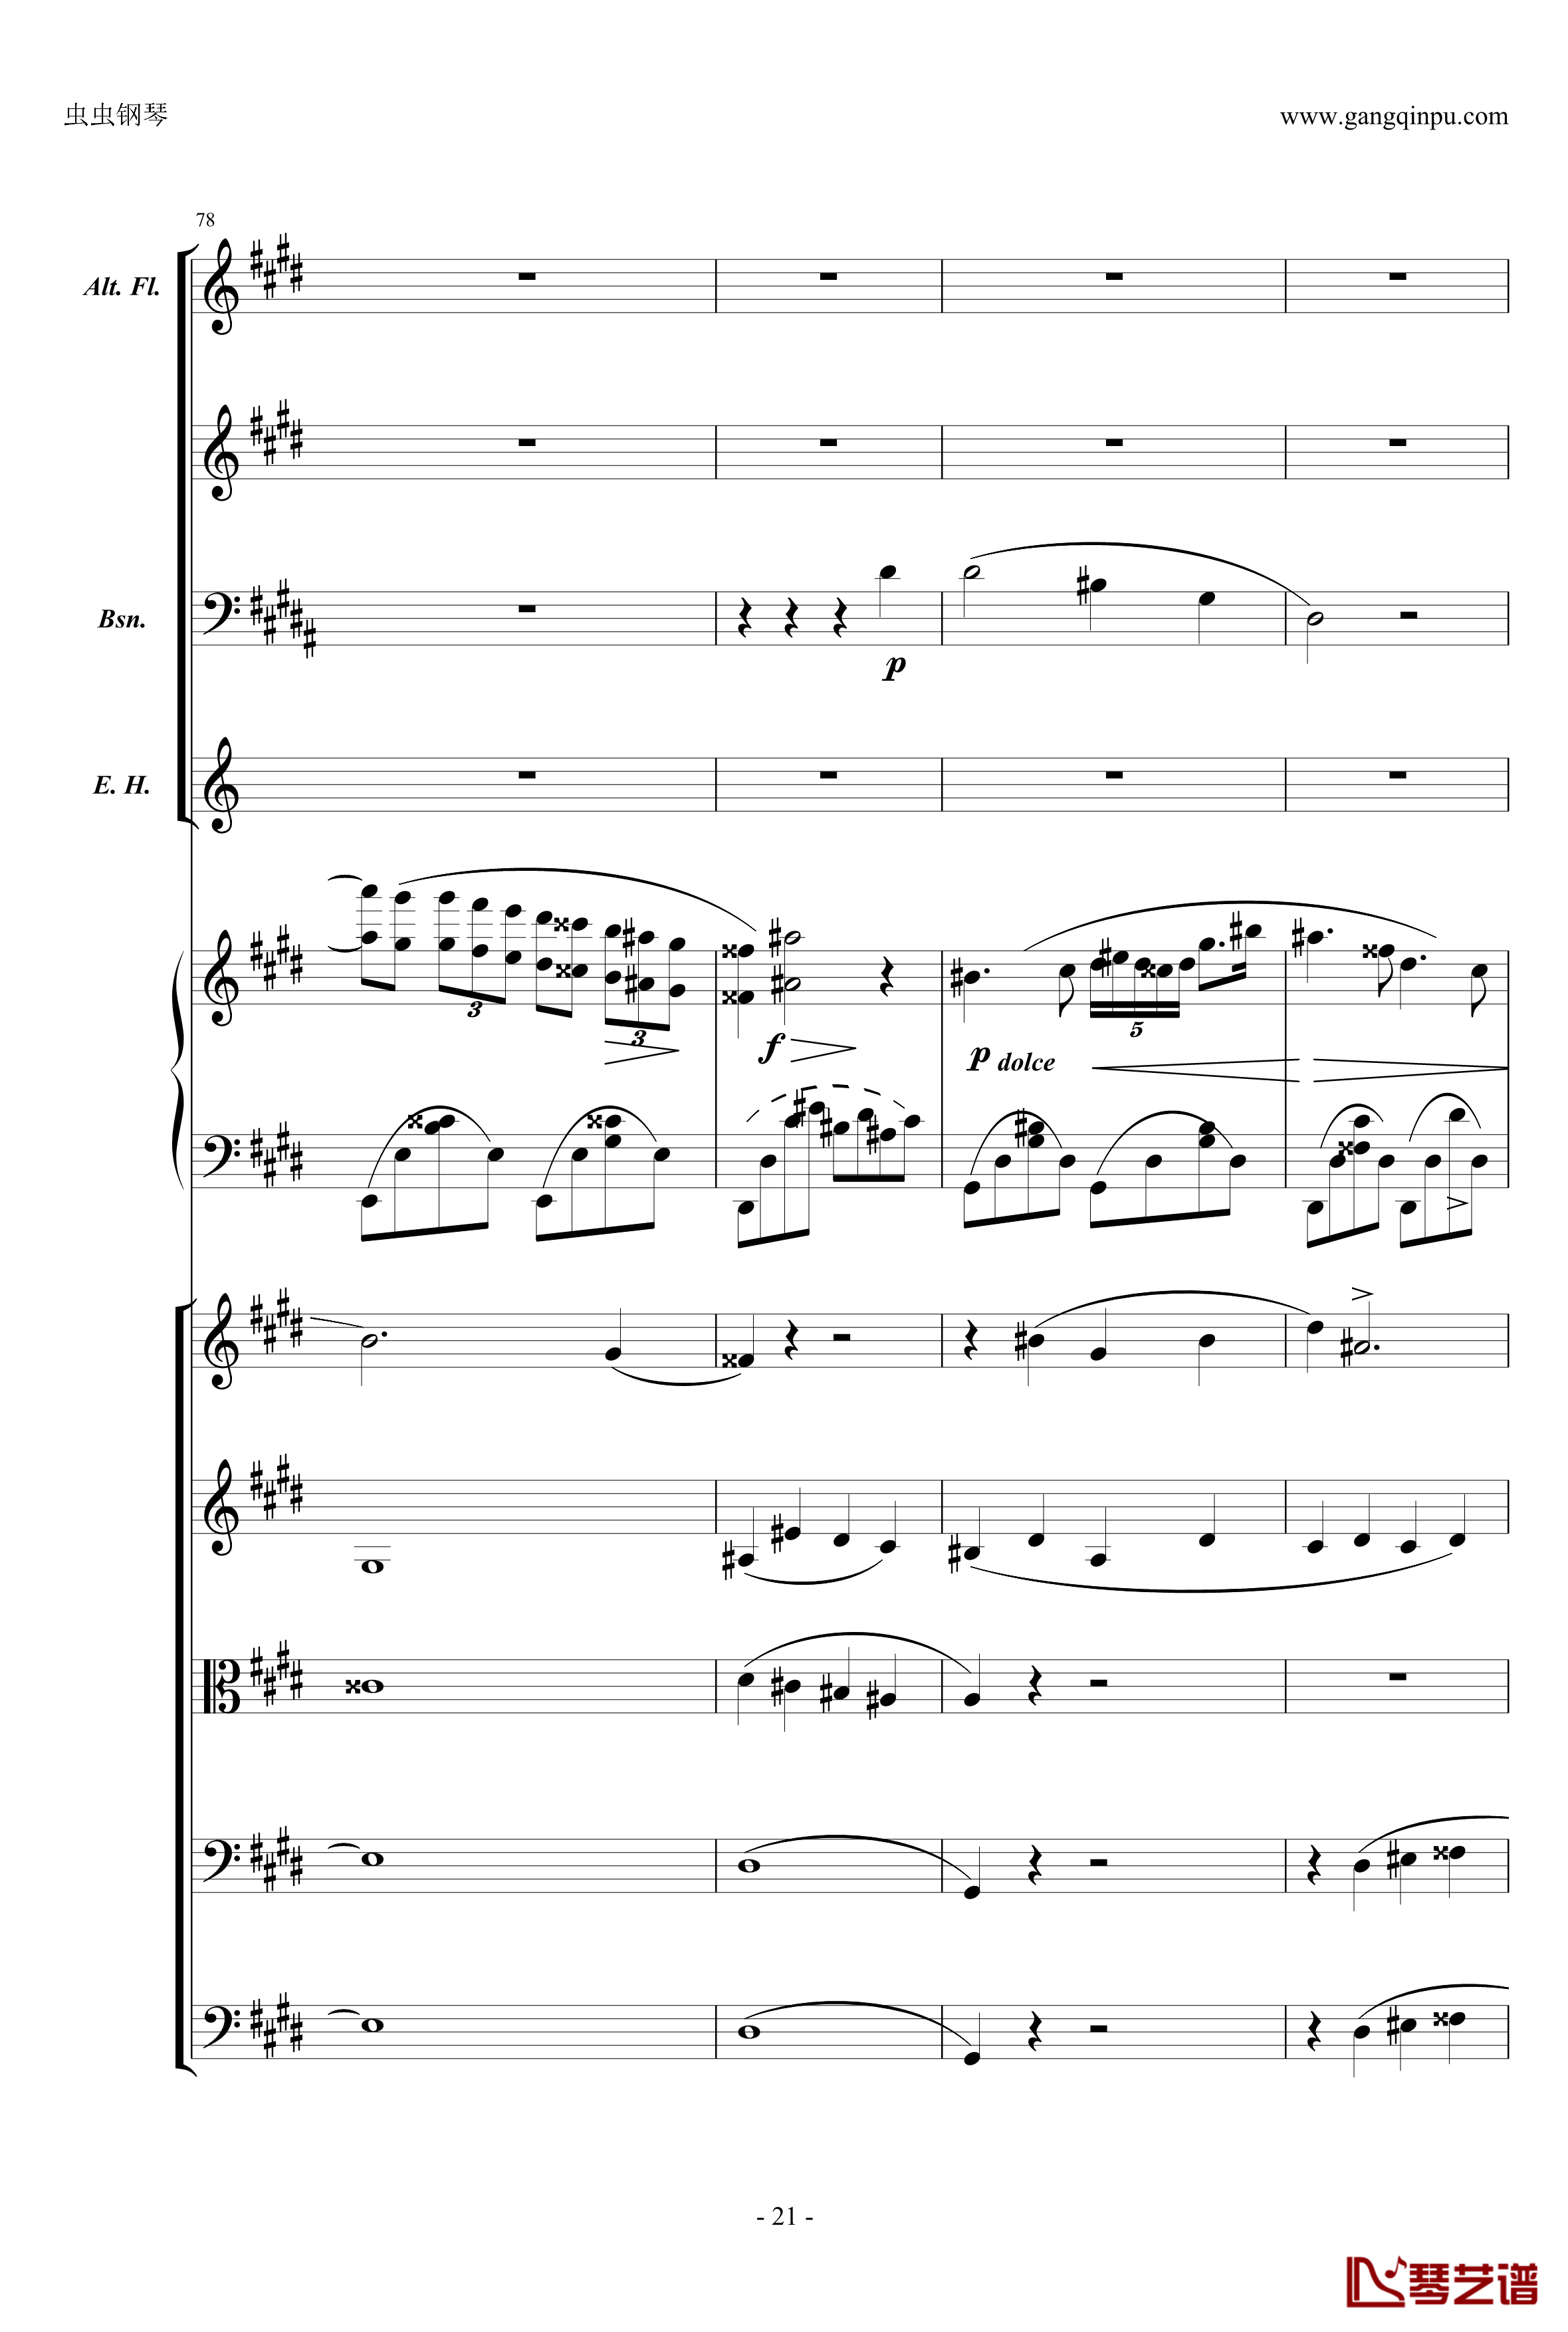 萧邦第一钢琴协奏曲第二乐章钢琴谱-肖邦-chopin21